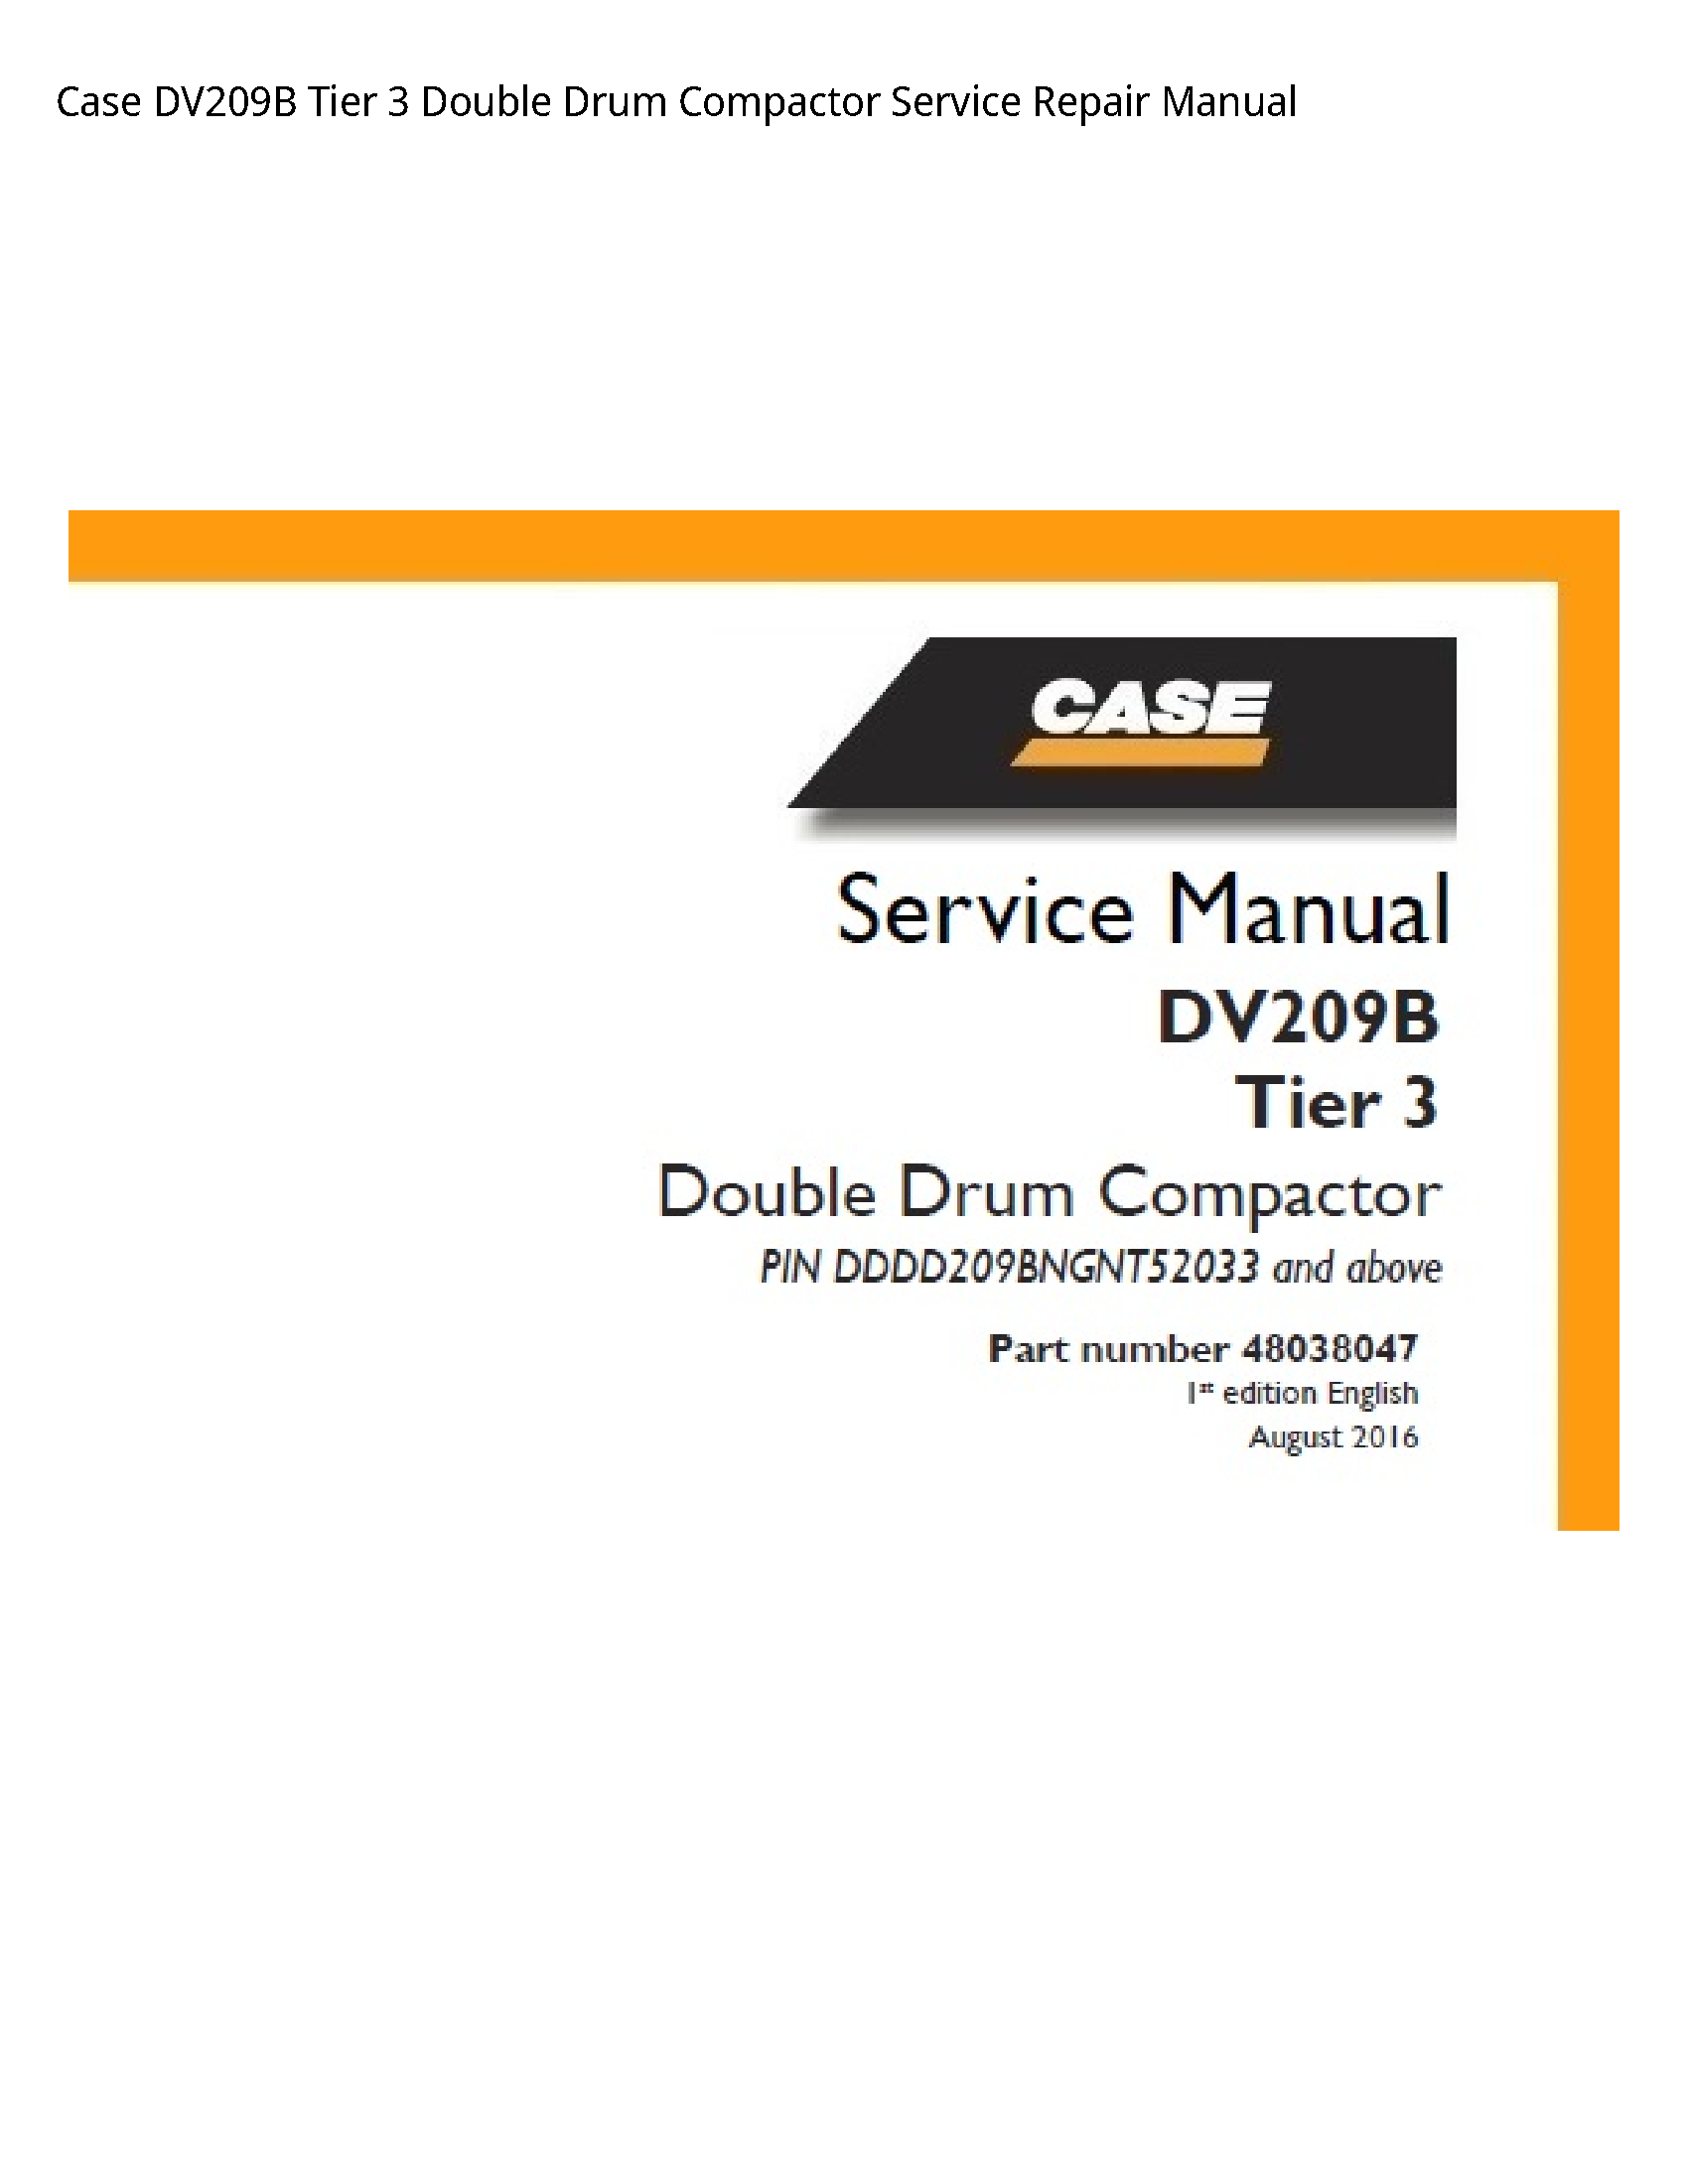 Case/Case IH DV209B Tier Double Drum Compactor manual